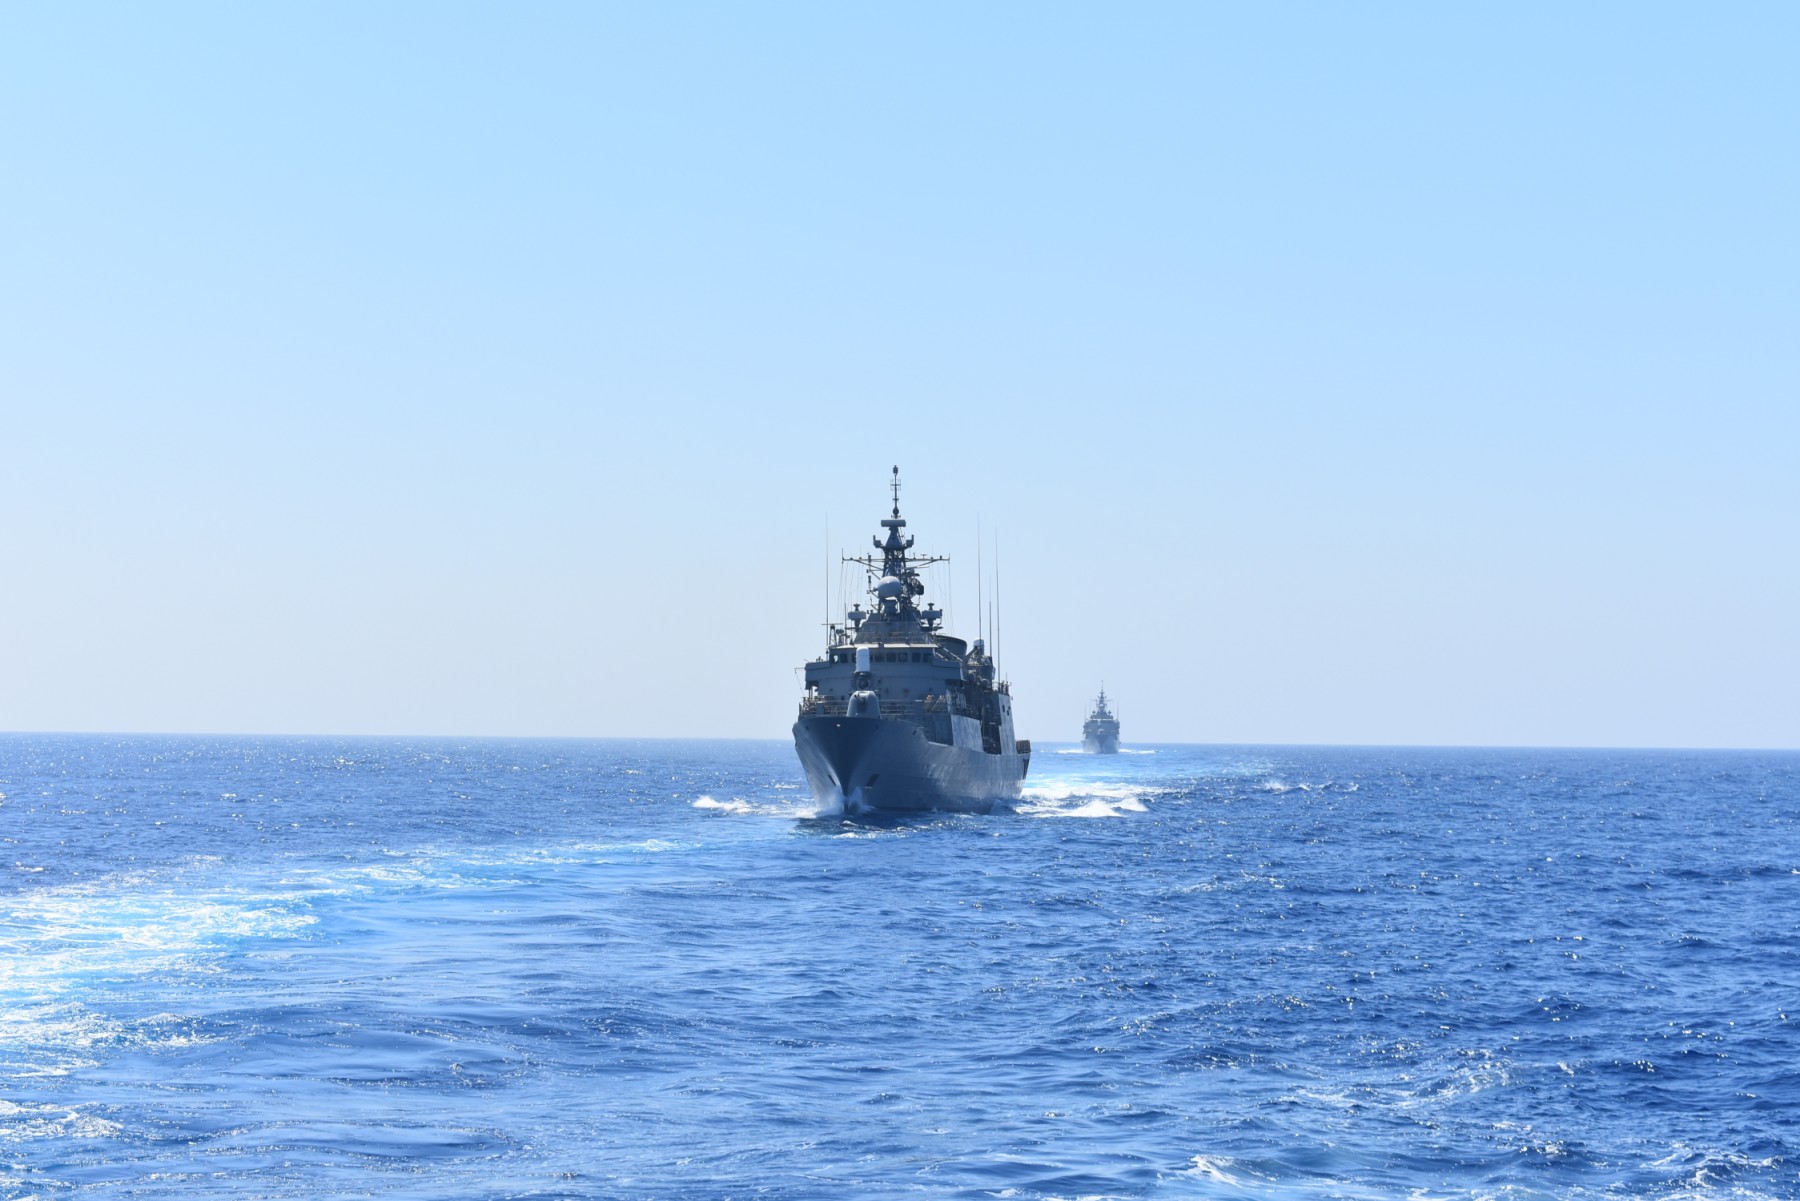 Ελλάδα, Κύπρος, Γαλλία και Ιταλία στέλνουν ηχηρό μήνυμα στην Τουρκία: Τετραμερής στρατιωτική πρωτοβουλία για την Αν. Μεσόγειο